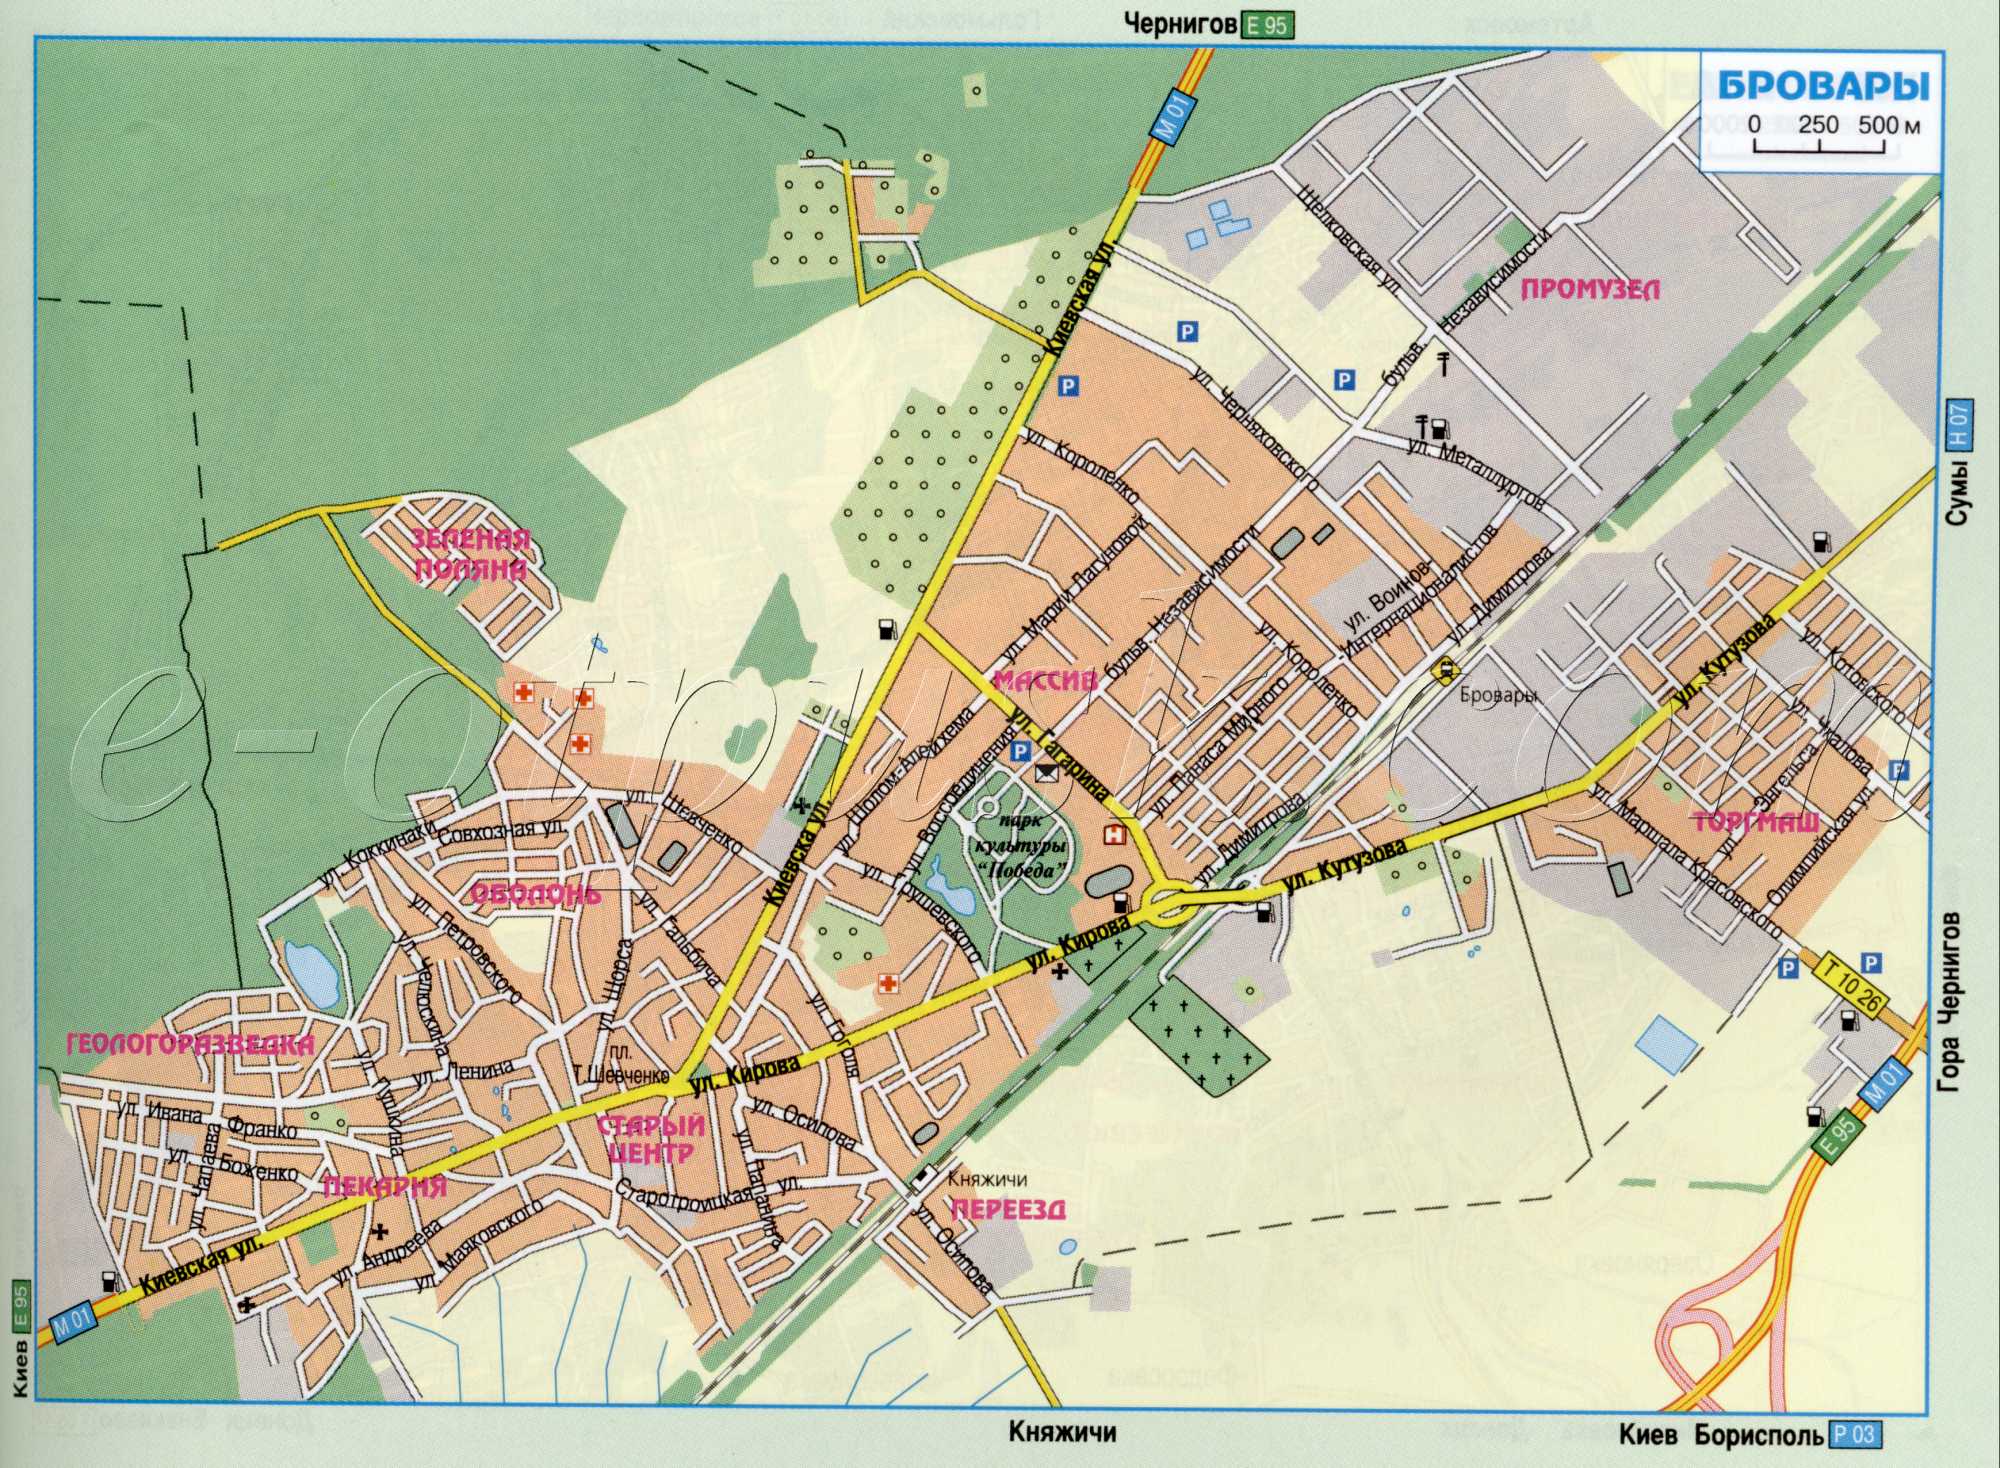 carte Brovary. Carte schématique des routes principales de la ville région Brovary, Kyiv. Télécharger la carte